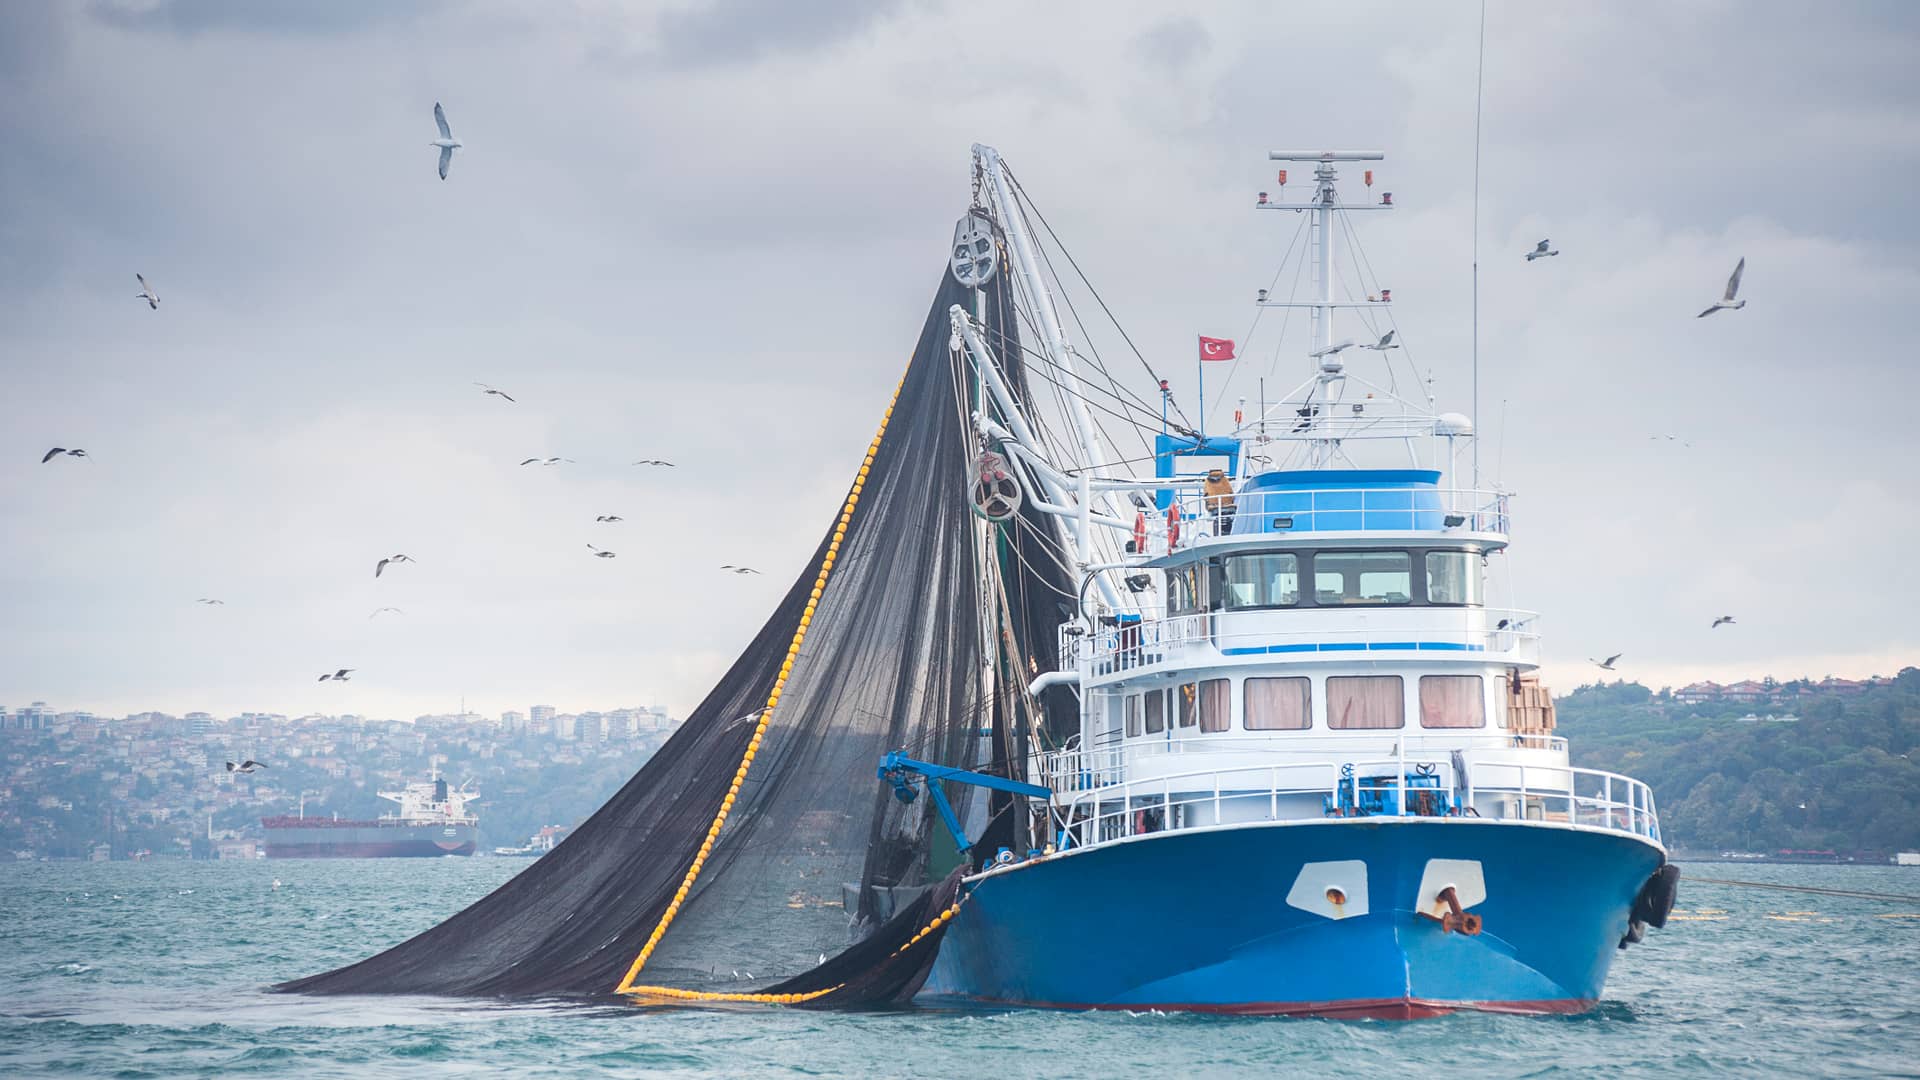 Seguro de embarcaciones de pesca: ¿es obligatorio?